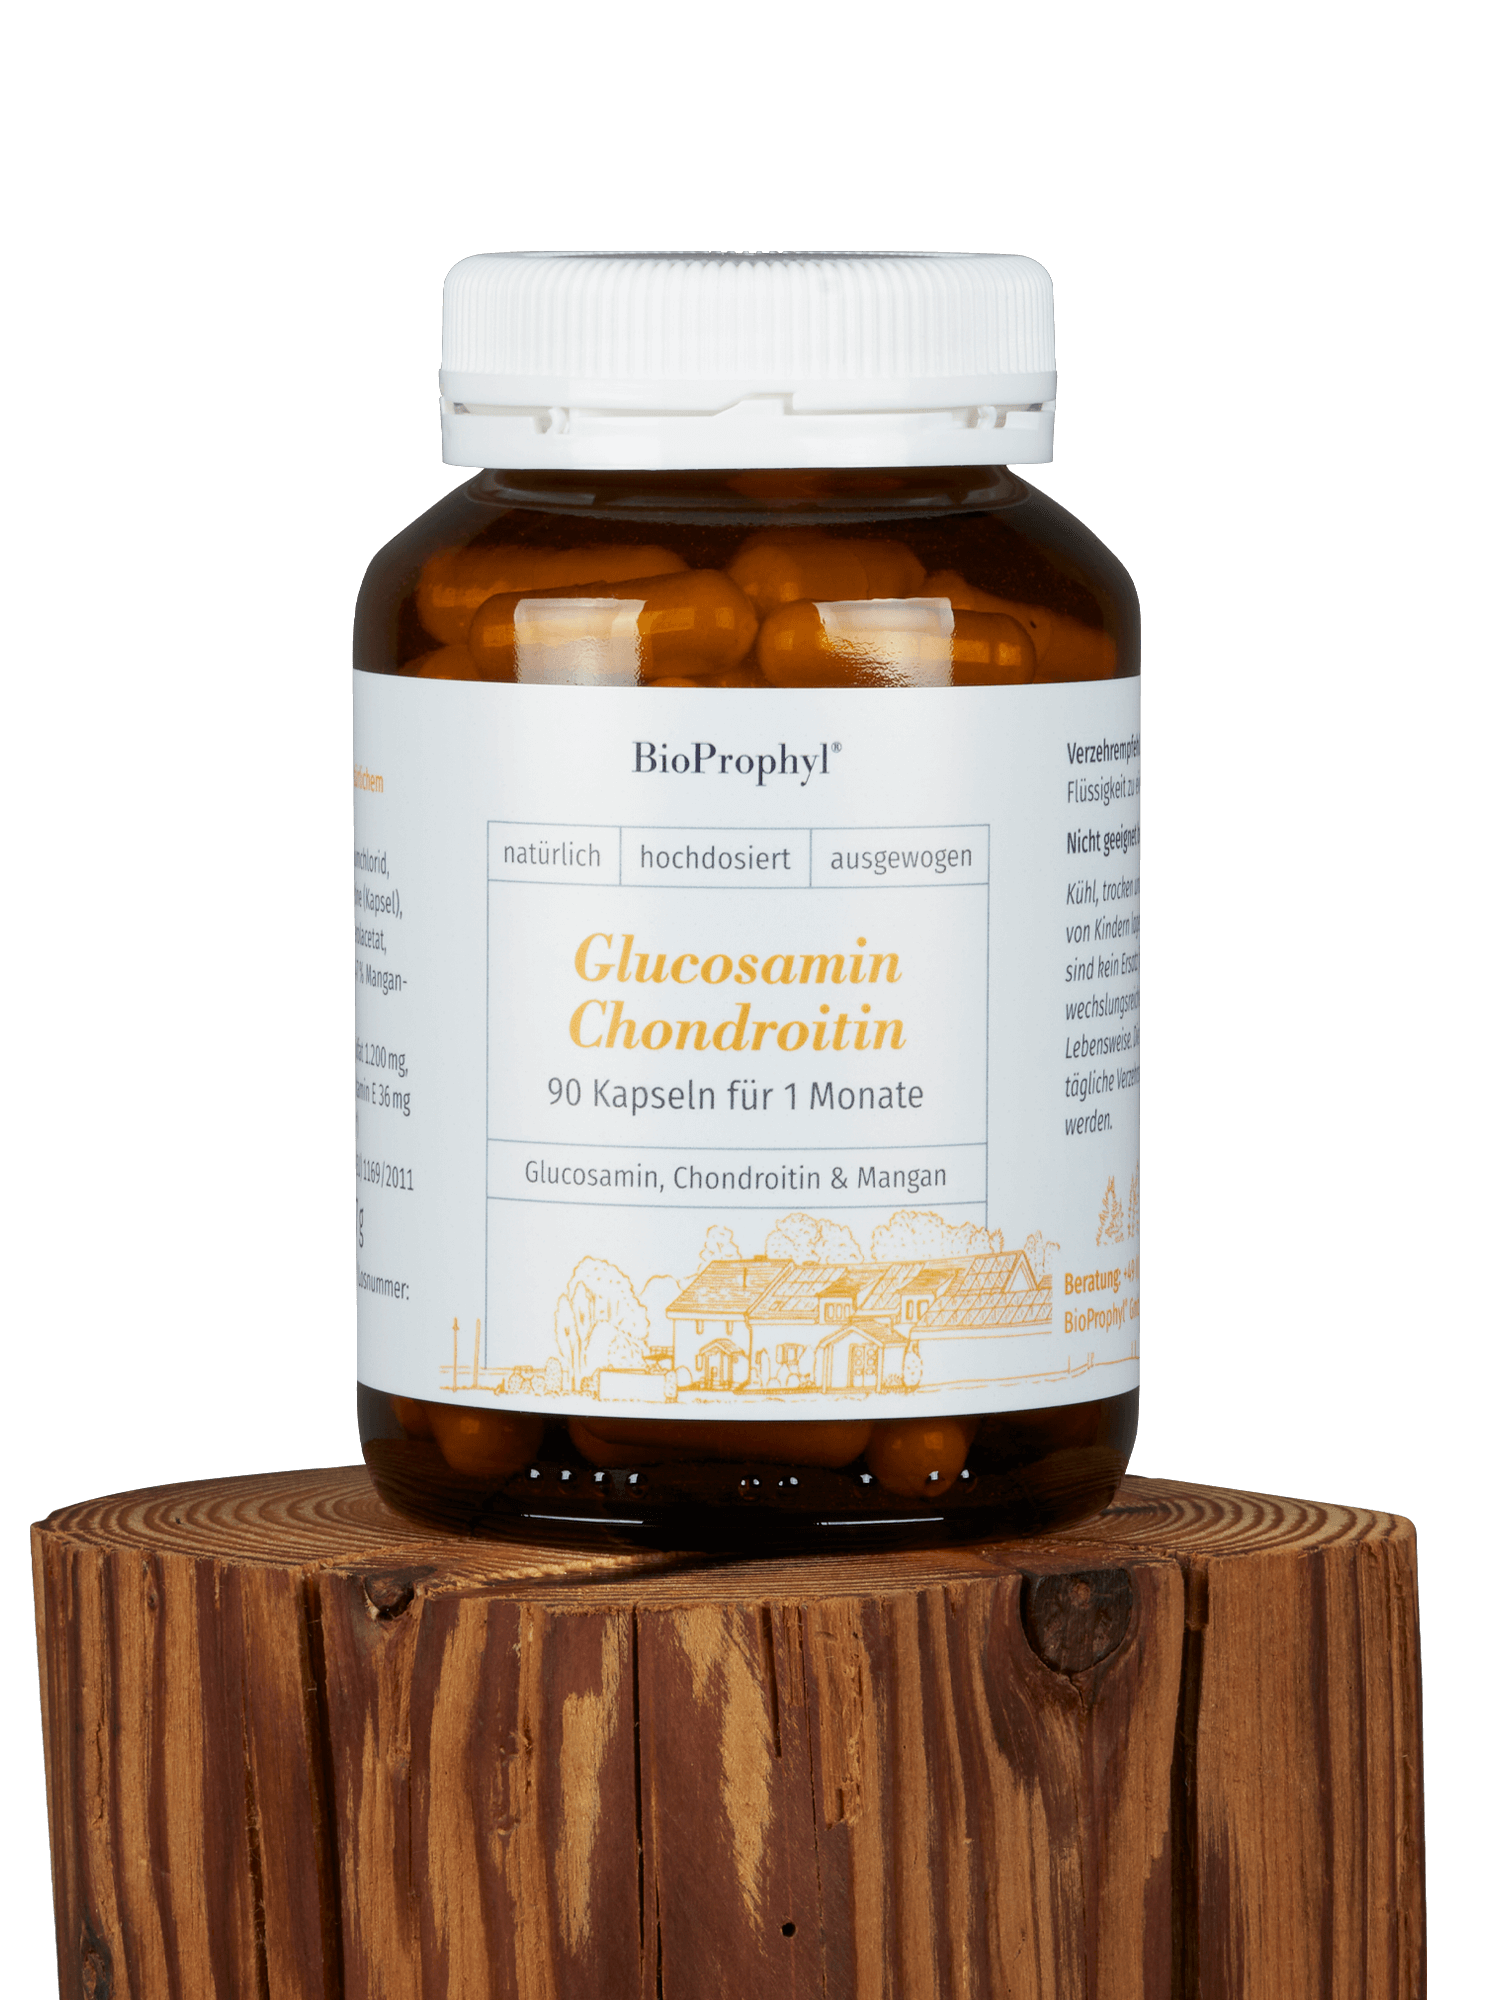 Glucosamin-Chondroitin Glas auf einem Holzsockel